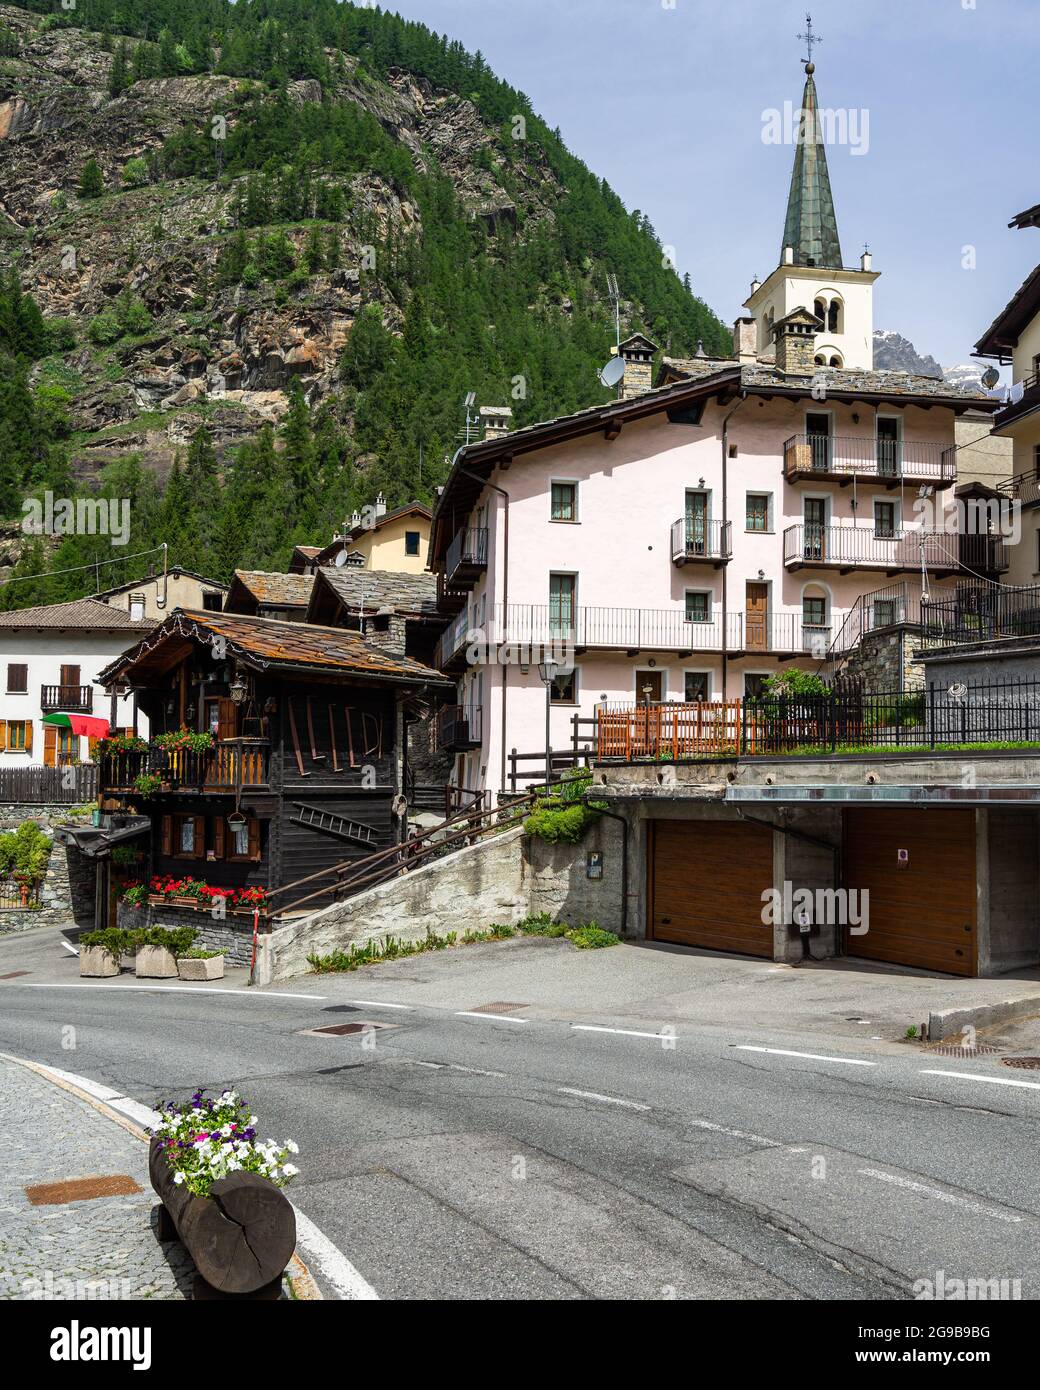 Vista sulla Valtournenche una tipica località turistica della Valle d'Aosta durante la stagione estiva. Valtournenche, Italia, giugno 2021 Foto Stock